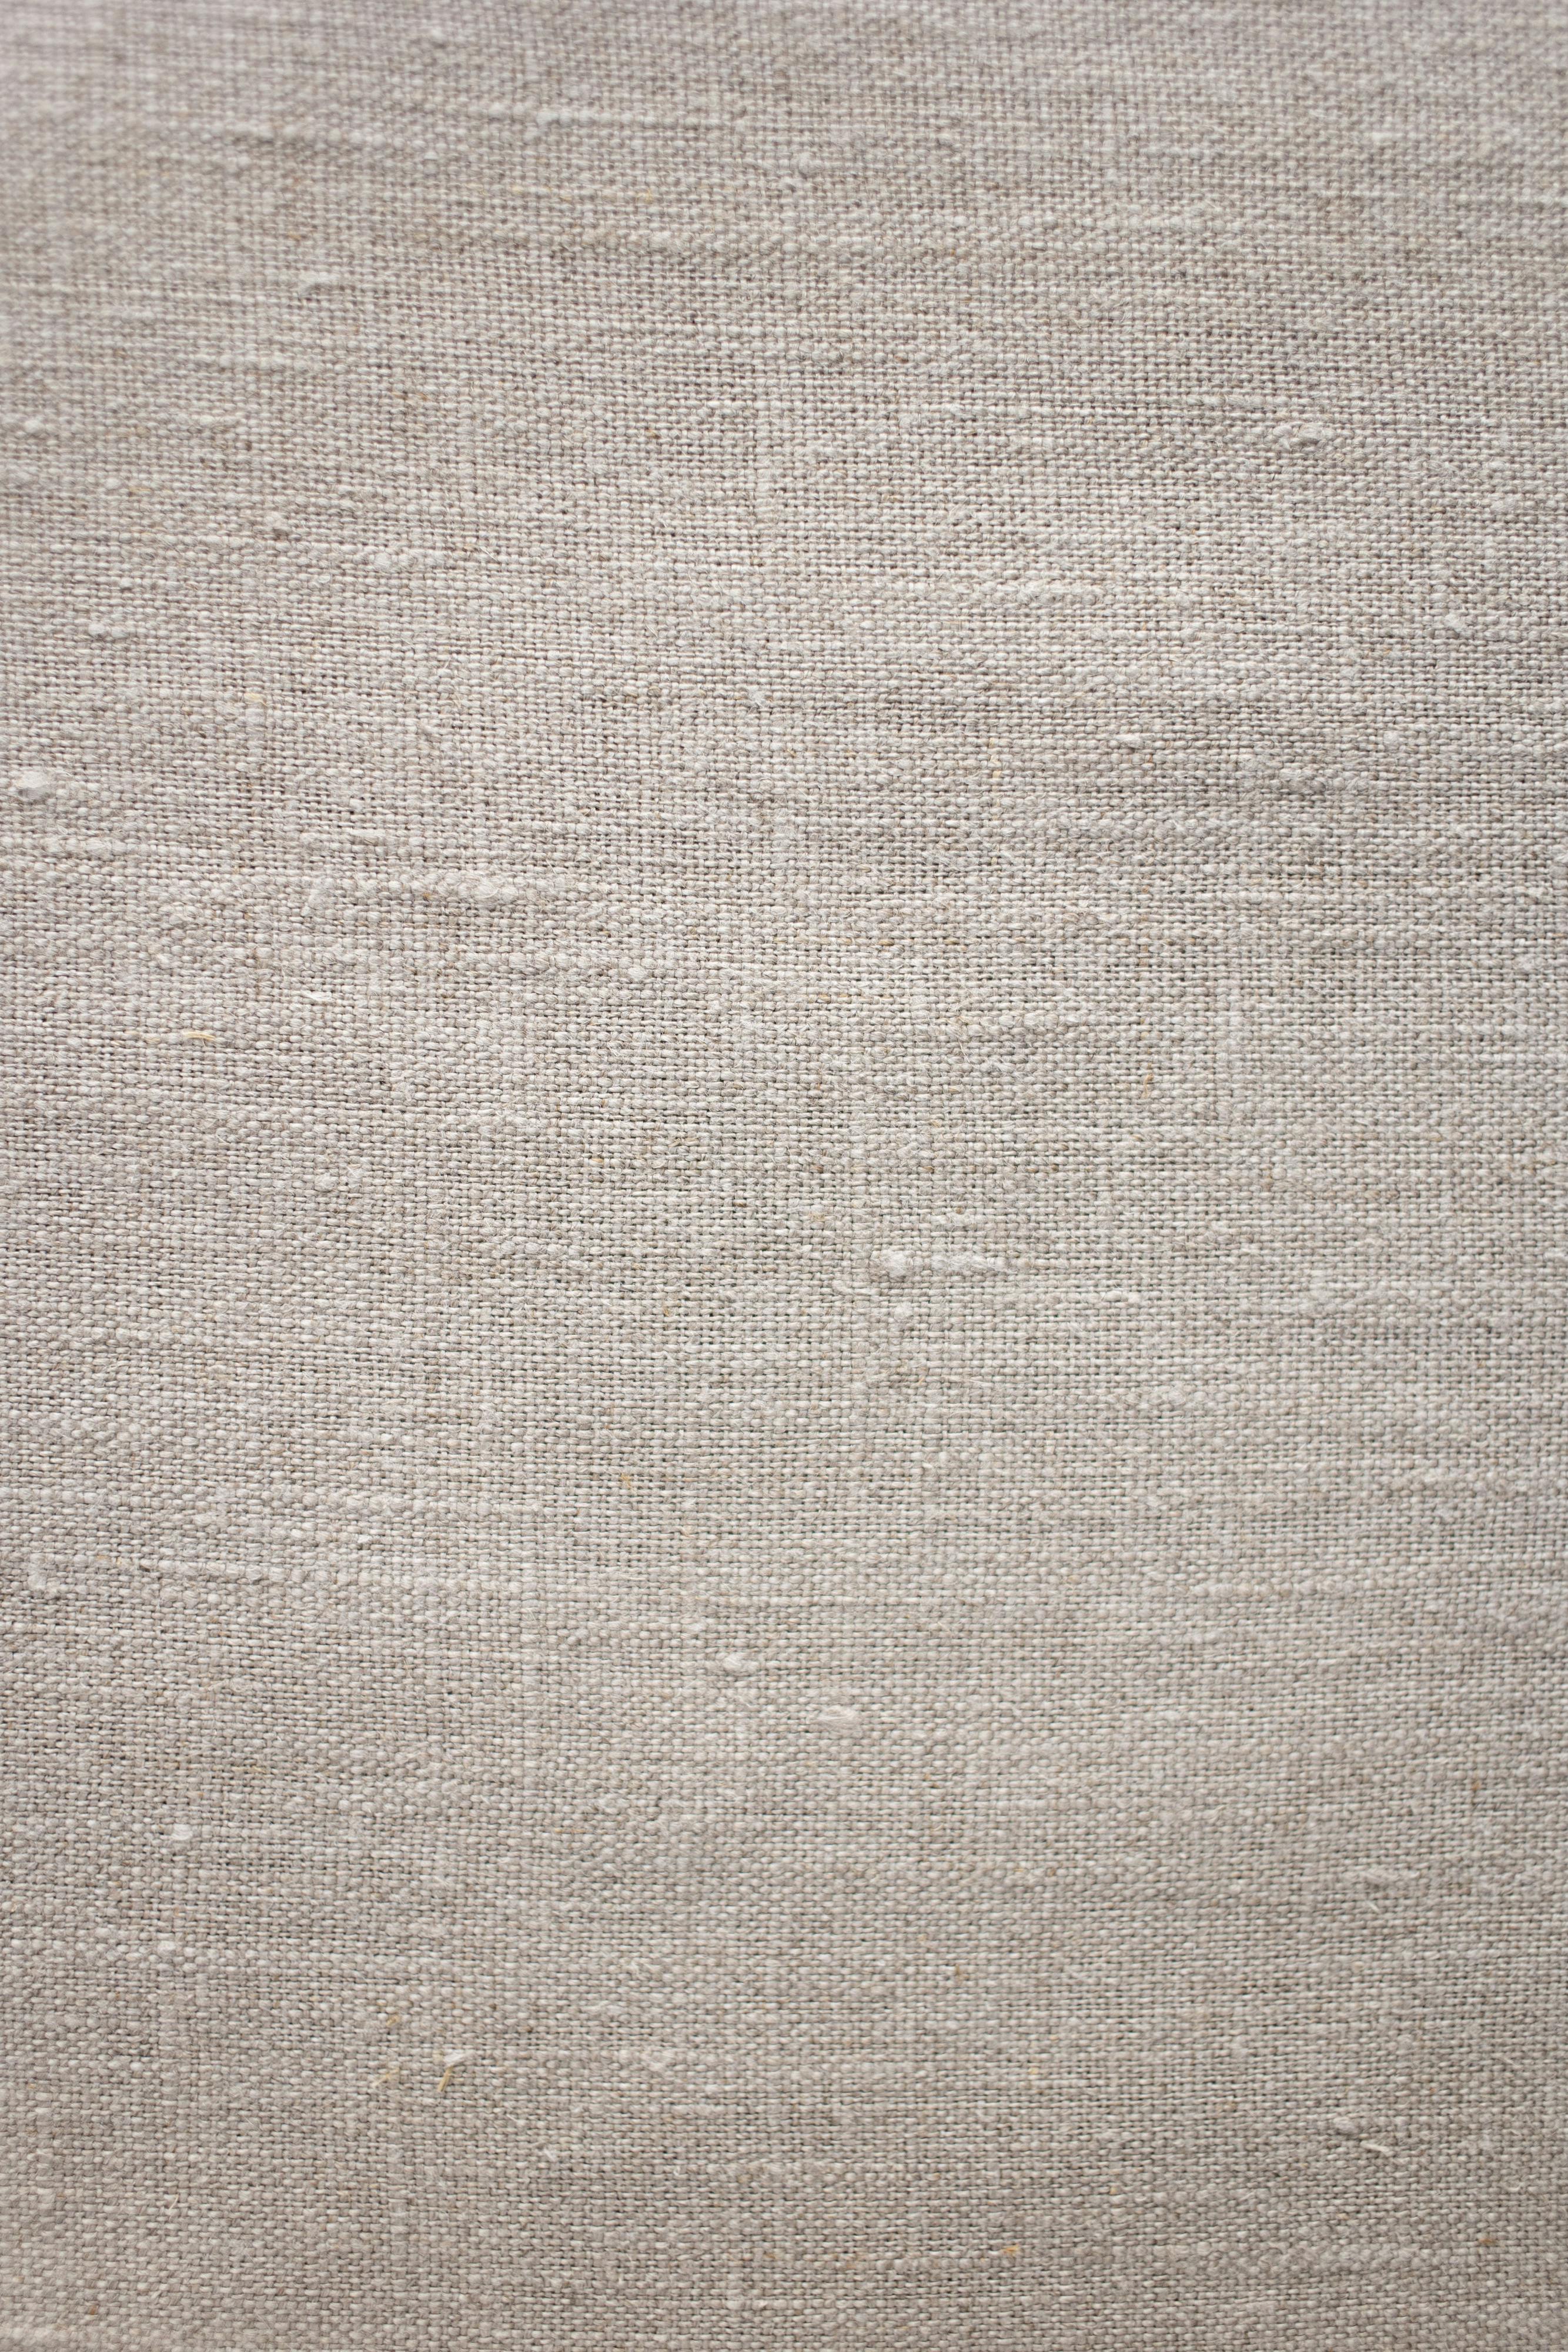 Linen wallpaper texture seamless 11486